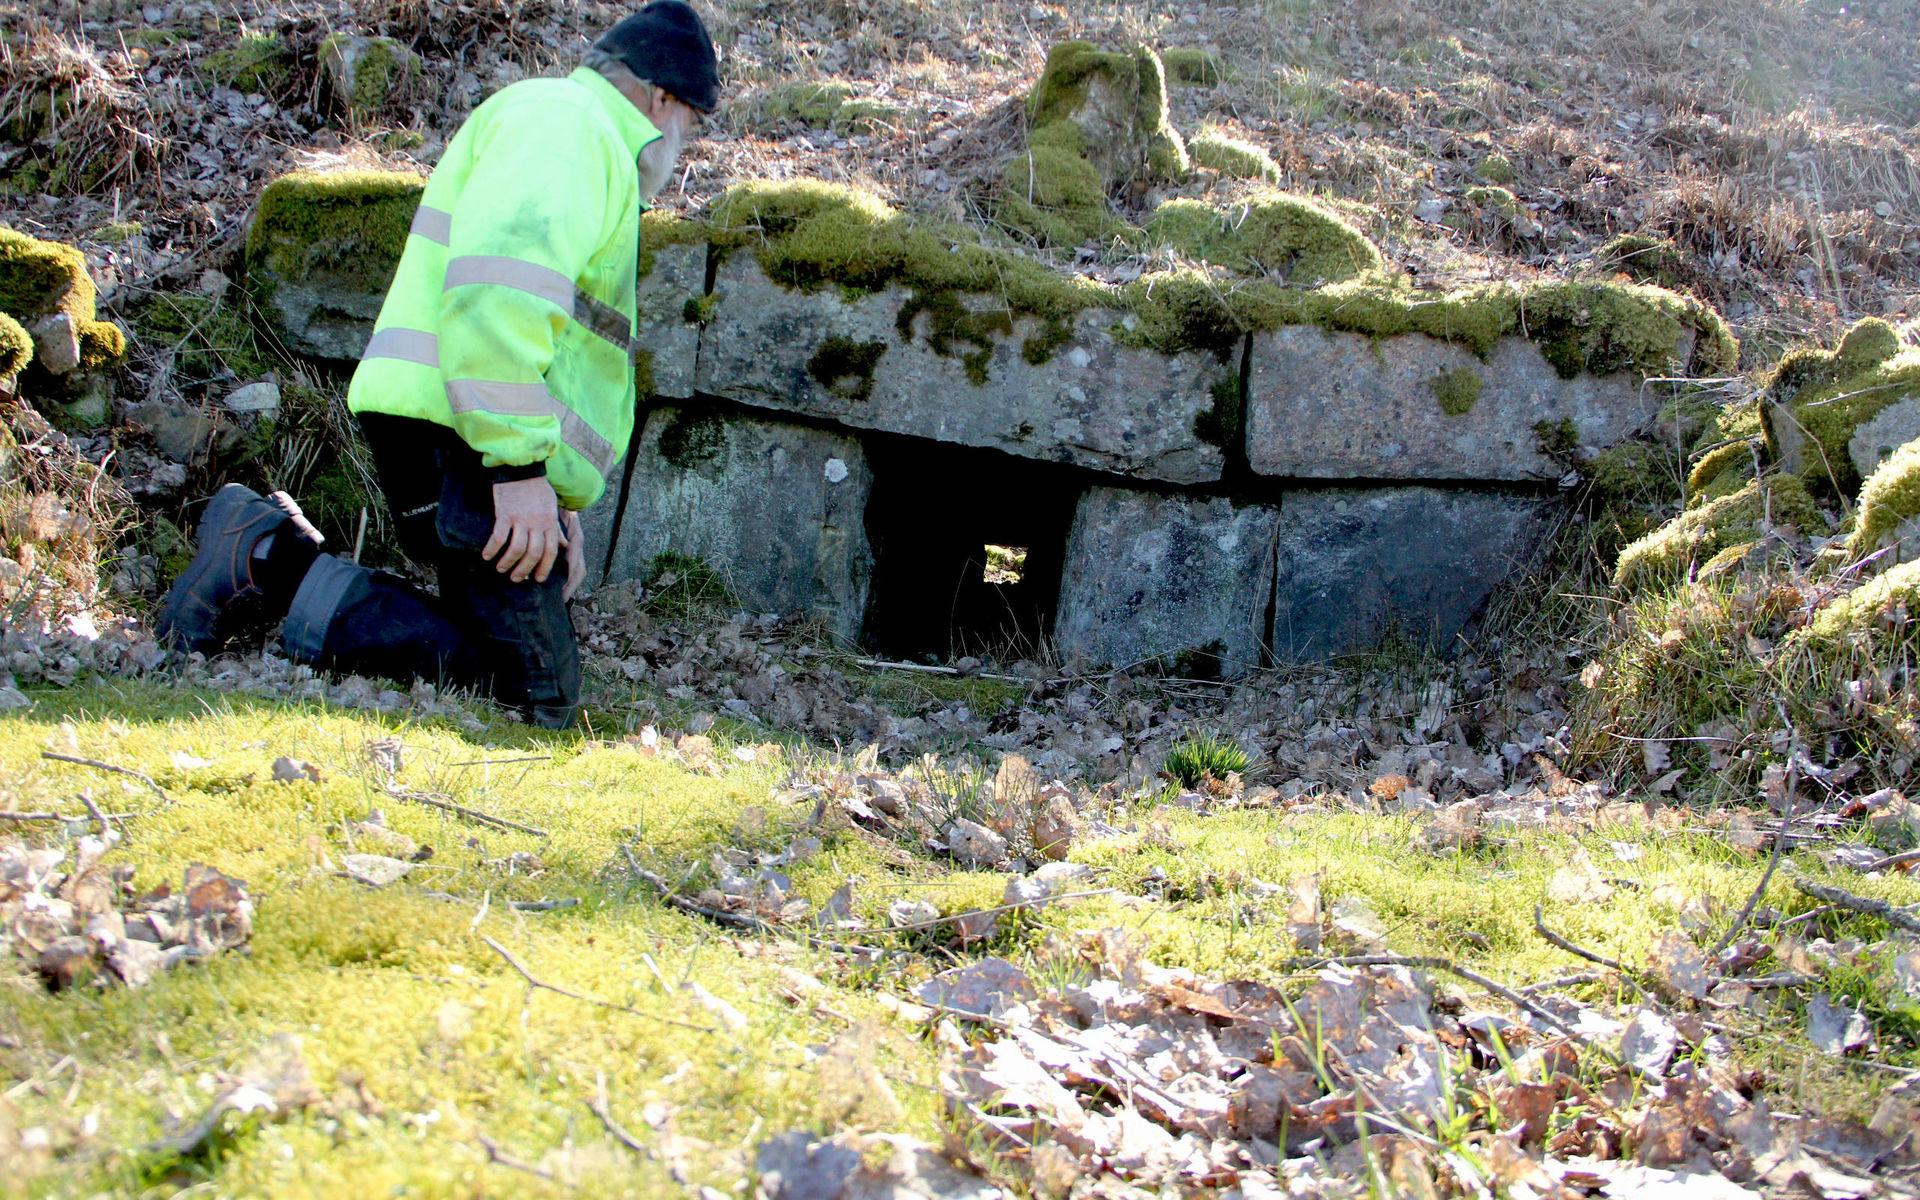 Stensättningen i banvallen mellan Linnarp och Flähult imponerar. Gert kröp in i vägtrumman som barn. Han tvekade dock att åla sig in i hålet när vi mötte honom under skärtorsdagen.